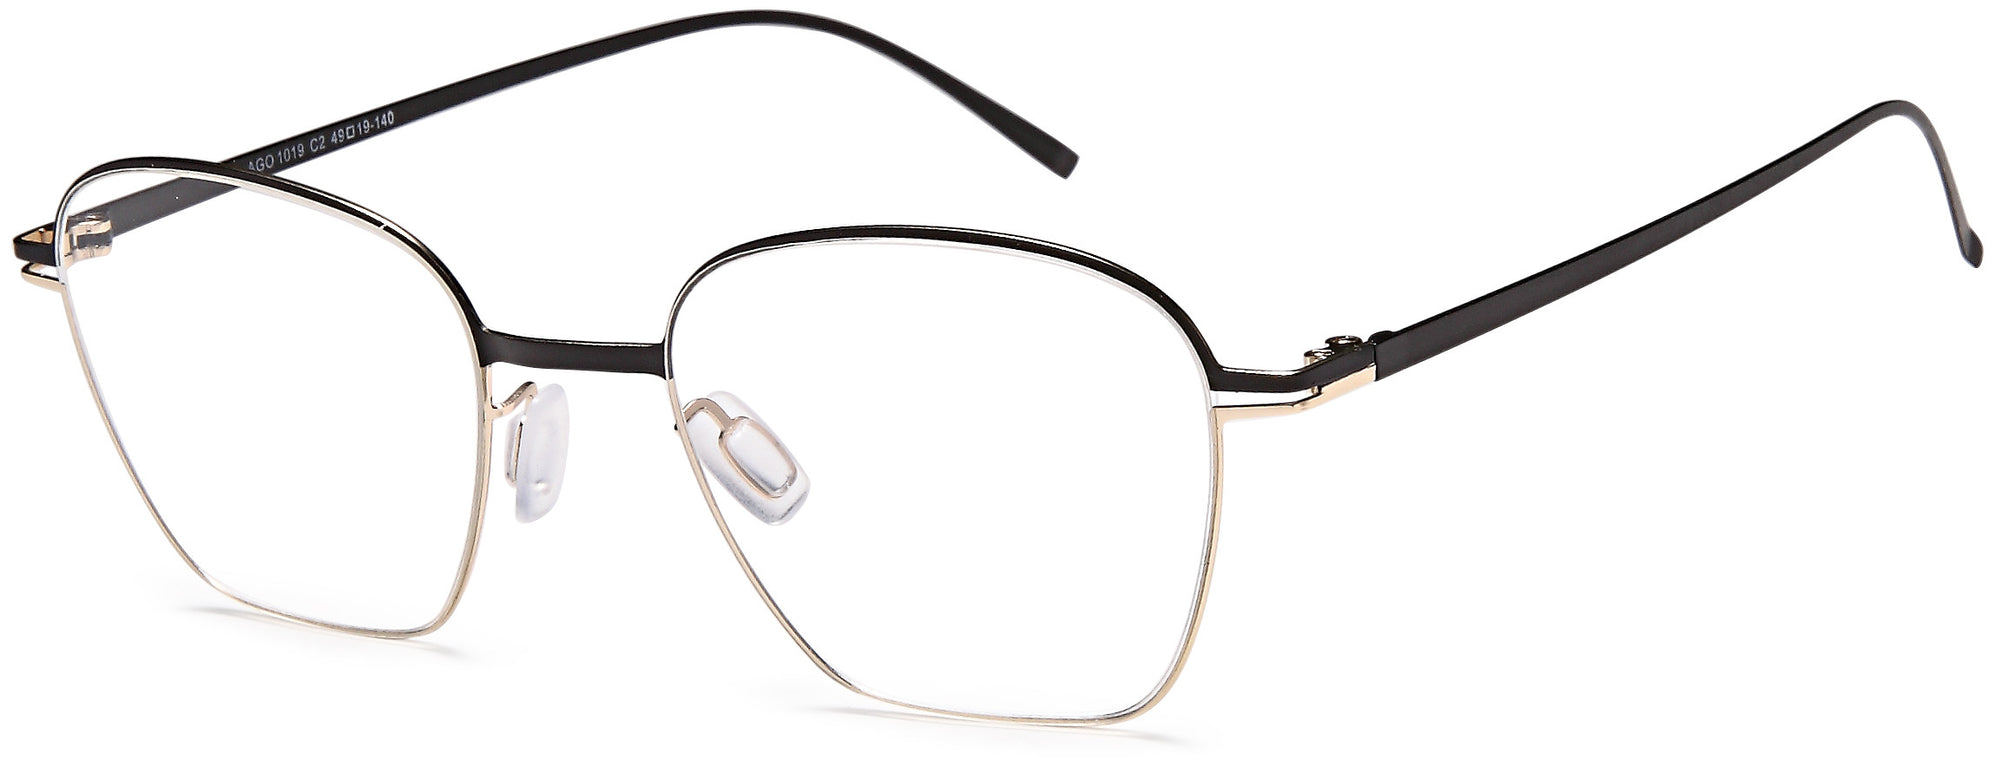 AGO Eyeglasses AGO1021 - Go-Readers.com